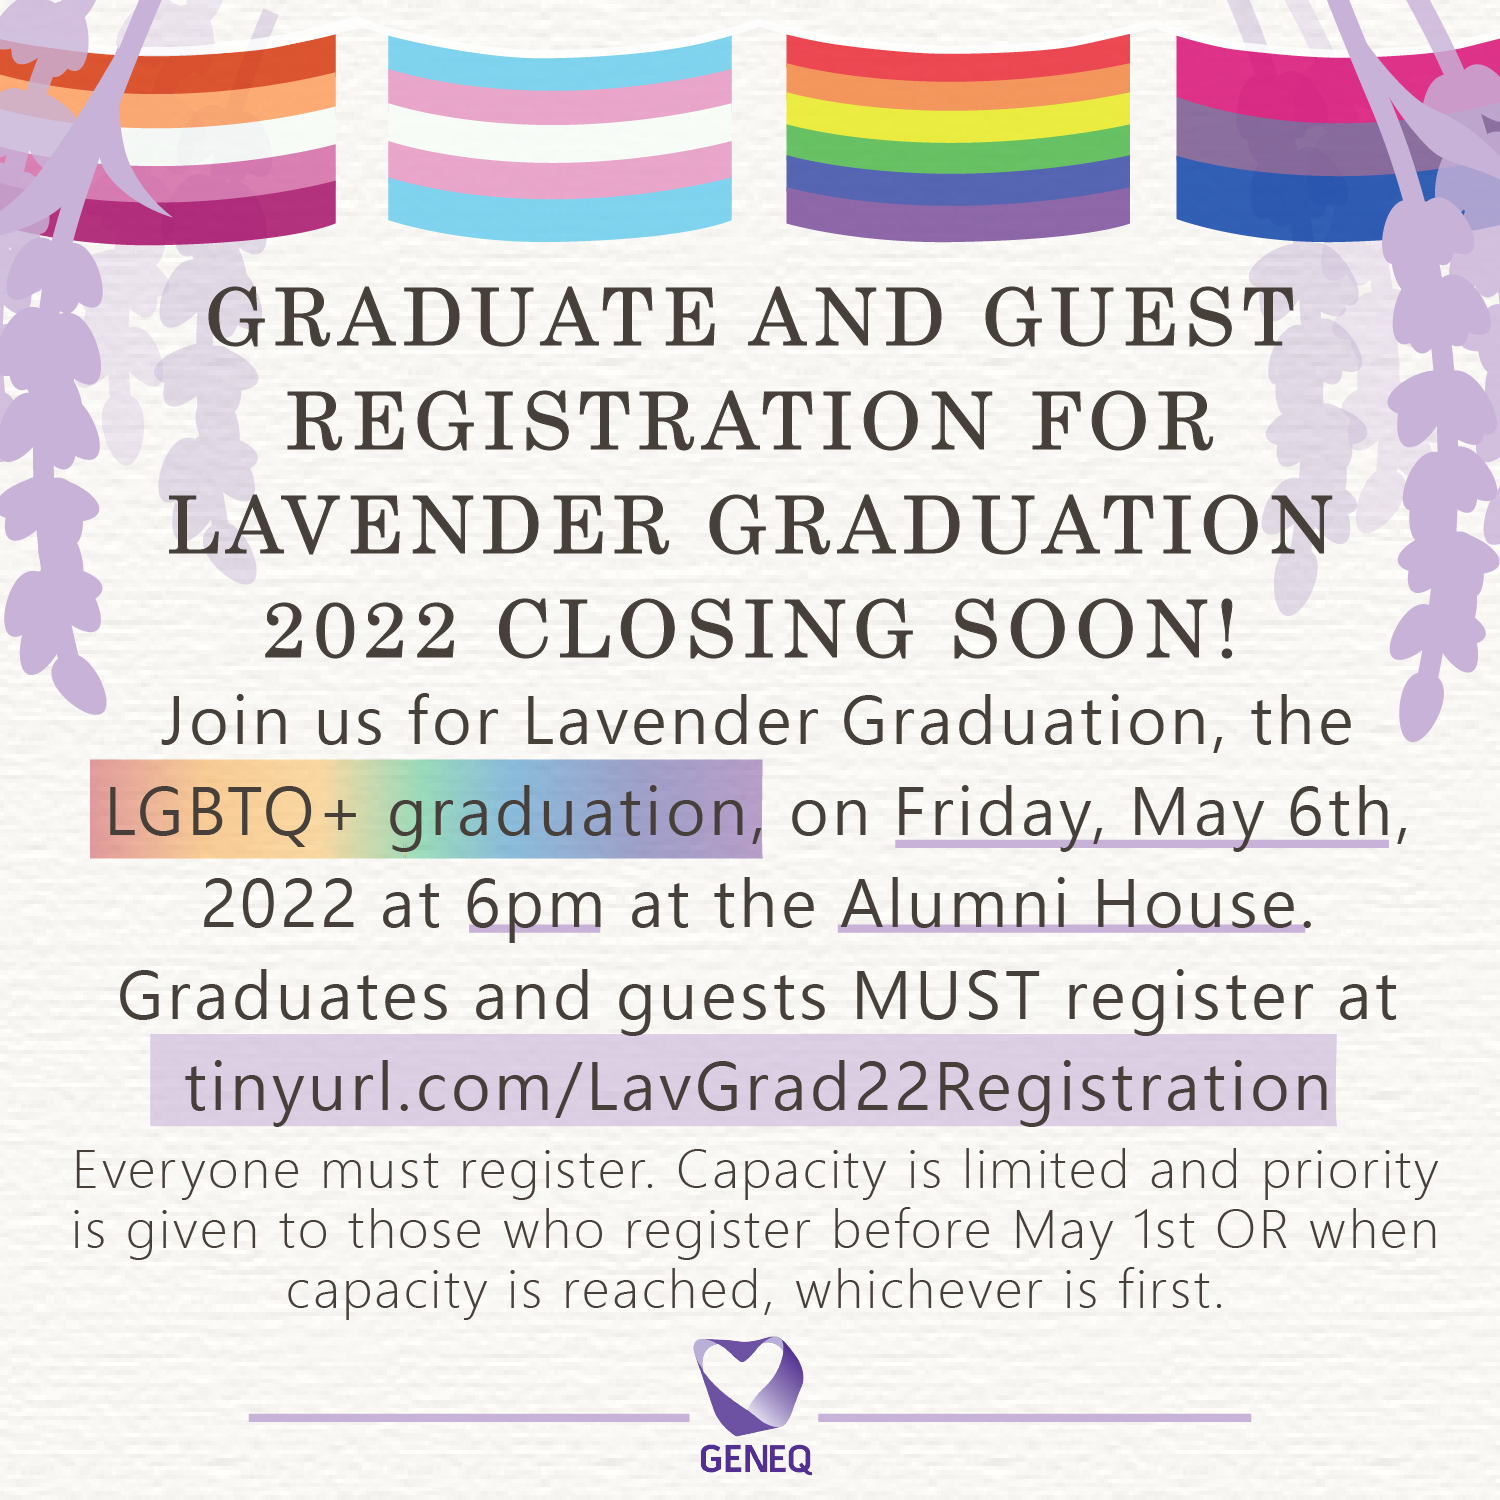 Lavender Graduation 2022 reminder